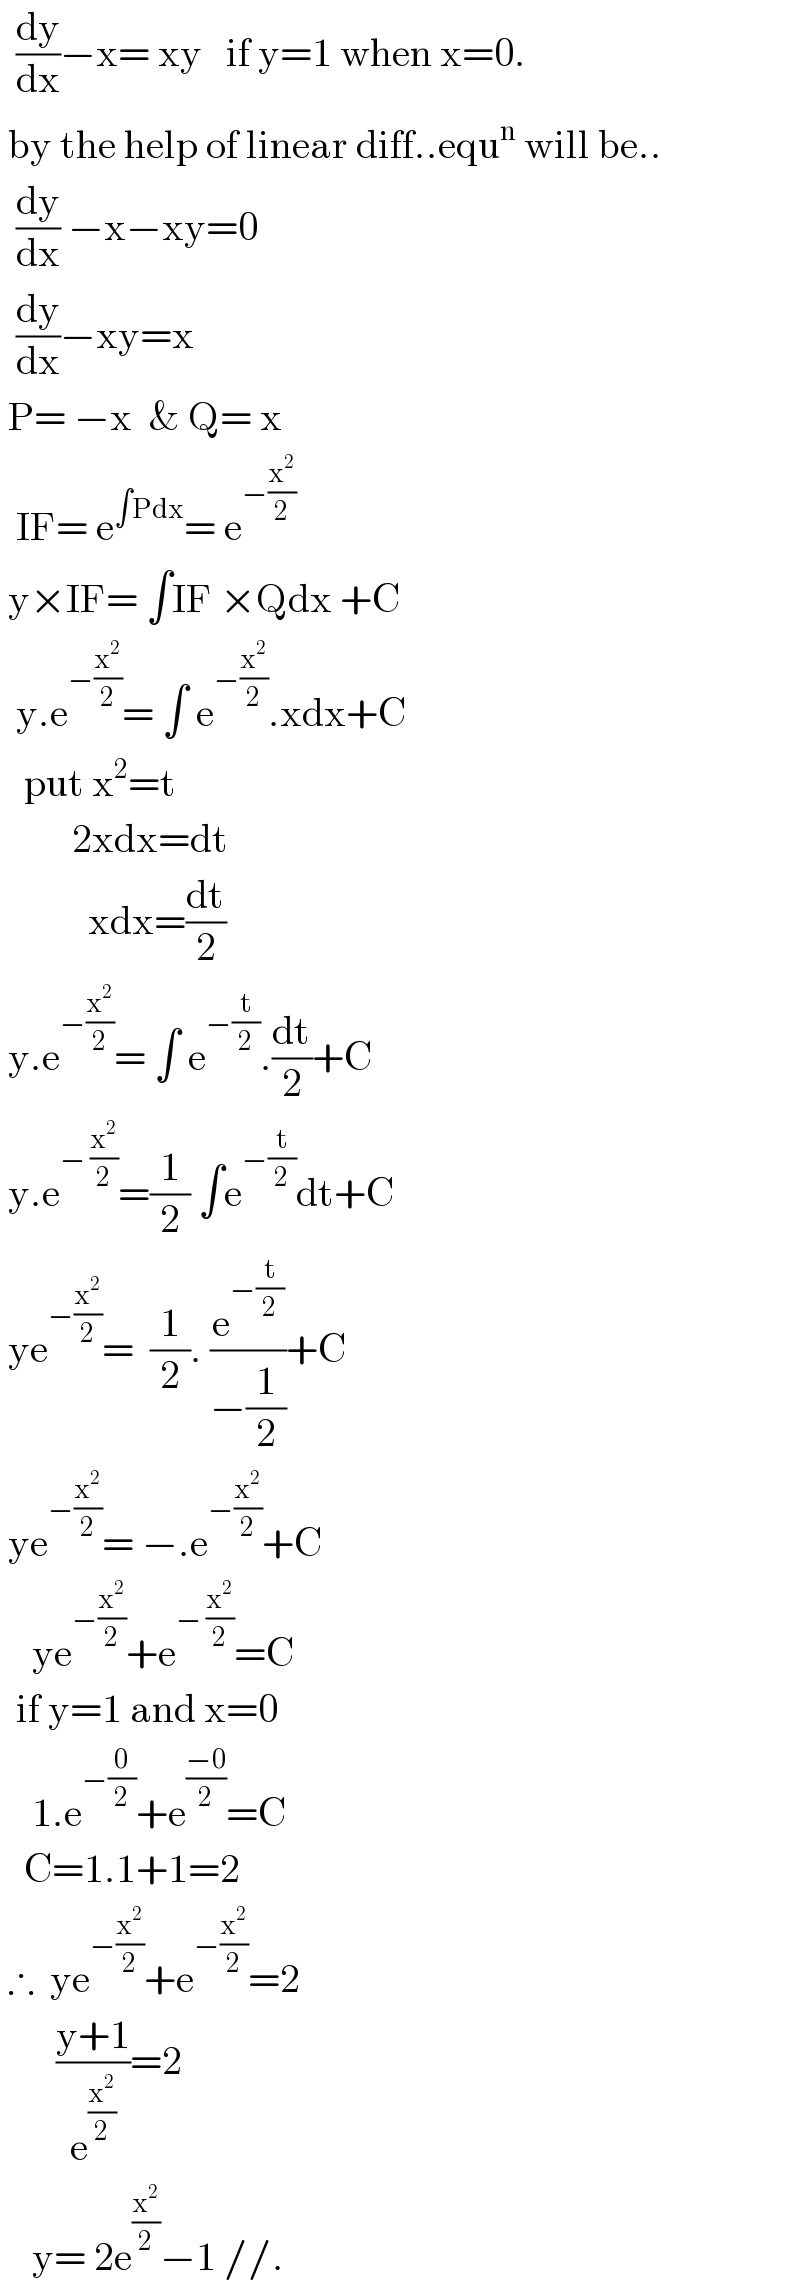   (dy/dx)−x= xy   if y=1 when x=0.   by the help of linear diff..equ^n  will be..    (dy/dx) −x−xy=0    (dy/dx)−xy=x   P= −x  & Q= x    IF= e^(∫Pdx) = e^(−(x^2 /2))    y×IF= ∫IF ×Qdx +C    y.e^(−(x^2 /2)) = ∫ e^(−(x^2 /2)) .xdx+C     put x^2 =t           2xdx=dt             xdx=(dt/2)   y.e^(−(x^2 /2)) = ∫ e^(−(t/2)) .(dt/2)+C   y.e^(− (x^2 /2)) =(1/2) ∫e^(−(t/2)) dt+C   ye^(−(x^2 /2)) =  (1/2). (e^(−(t/2)) /(−(1/2)))+C   ye^(−(x^2 /2)) = −.e^(−(x^2 /2)) +C      ye^(−(x^2 /2)) +e^(− (x^2 /2)) =C    if y=1 and x=0      1.e^(−(0/2)) +e^((−0)/2) =C     C=1.1+1=2   ∴  ye^(−(x^2 /2)) +e^(−(x^2 /2)) =2         ((y+1)/e^(x^2 /2) )=2      y= 2e^(x^2 /2) −1 //.  